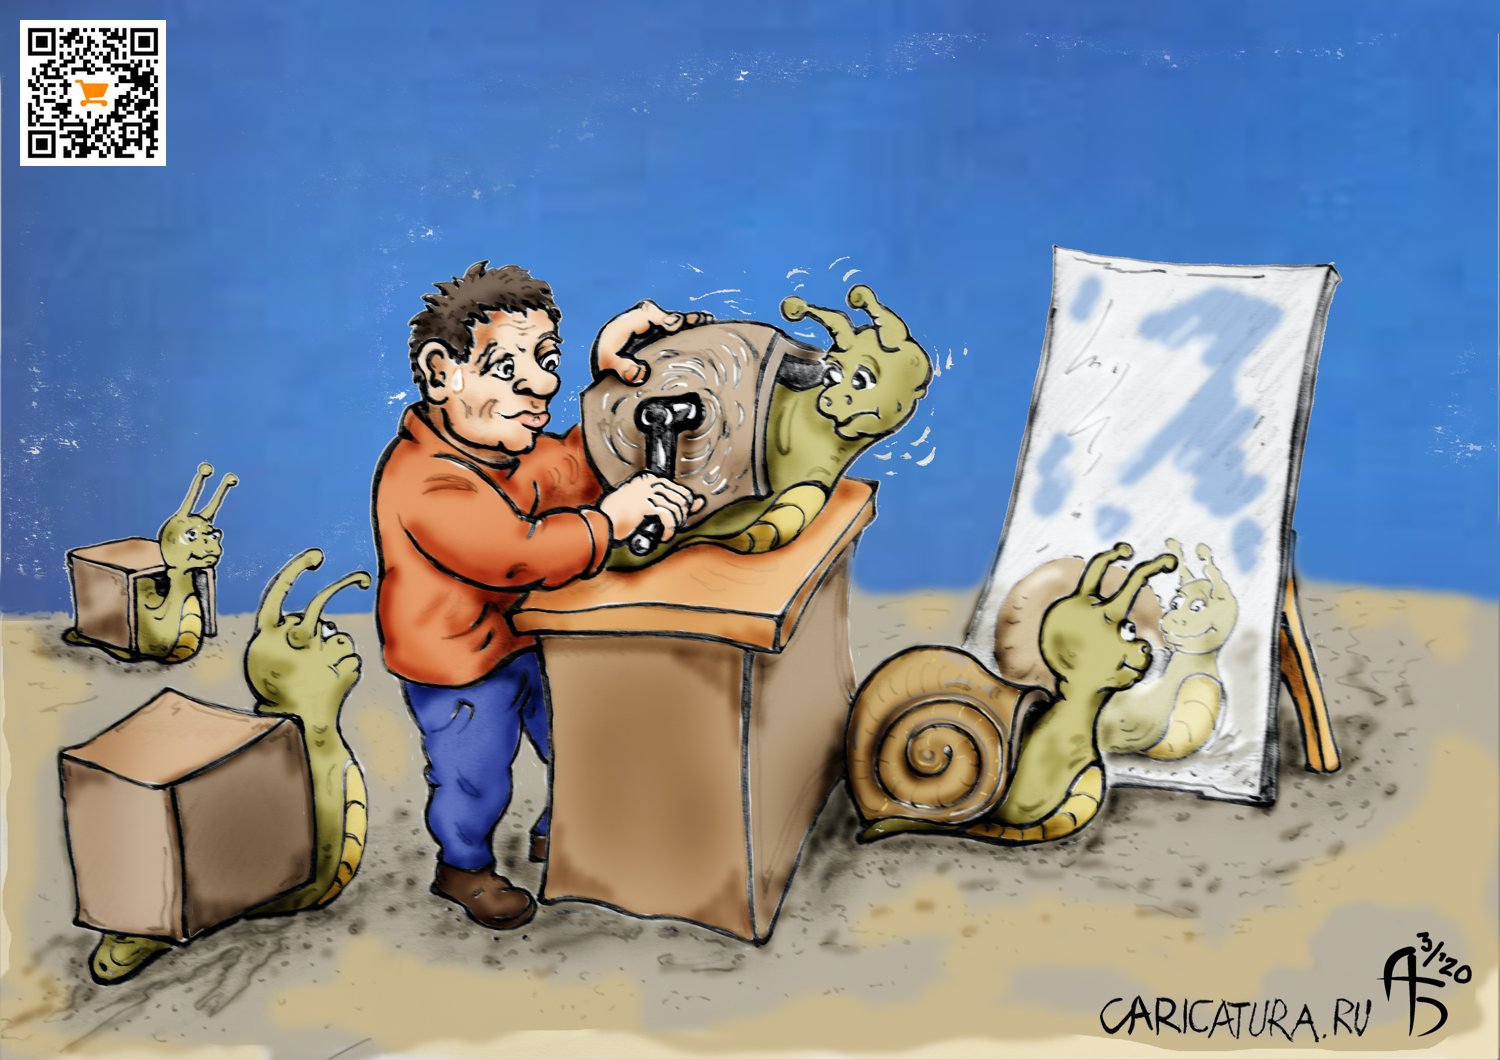 Карикатура "Пластический ветеринар", Александр Богданов